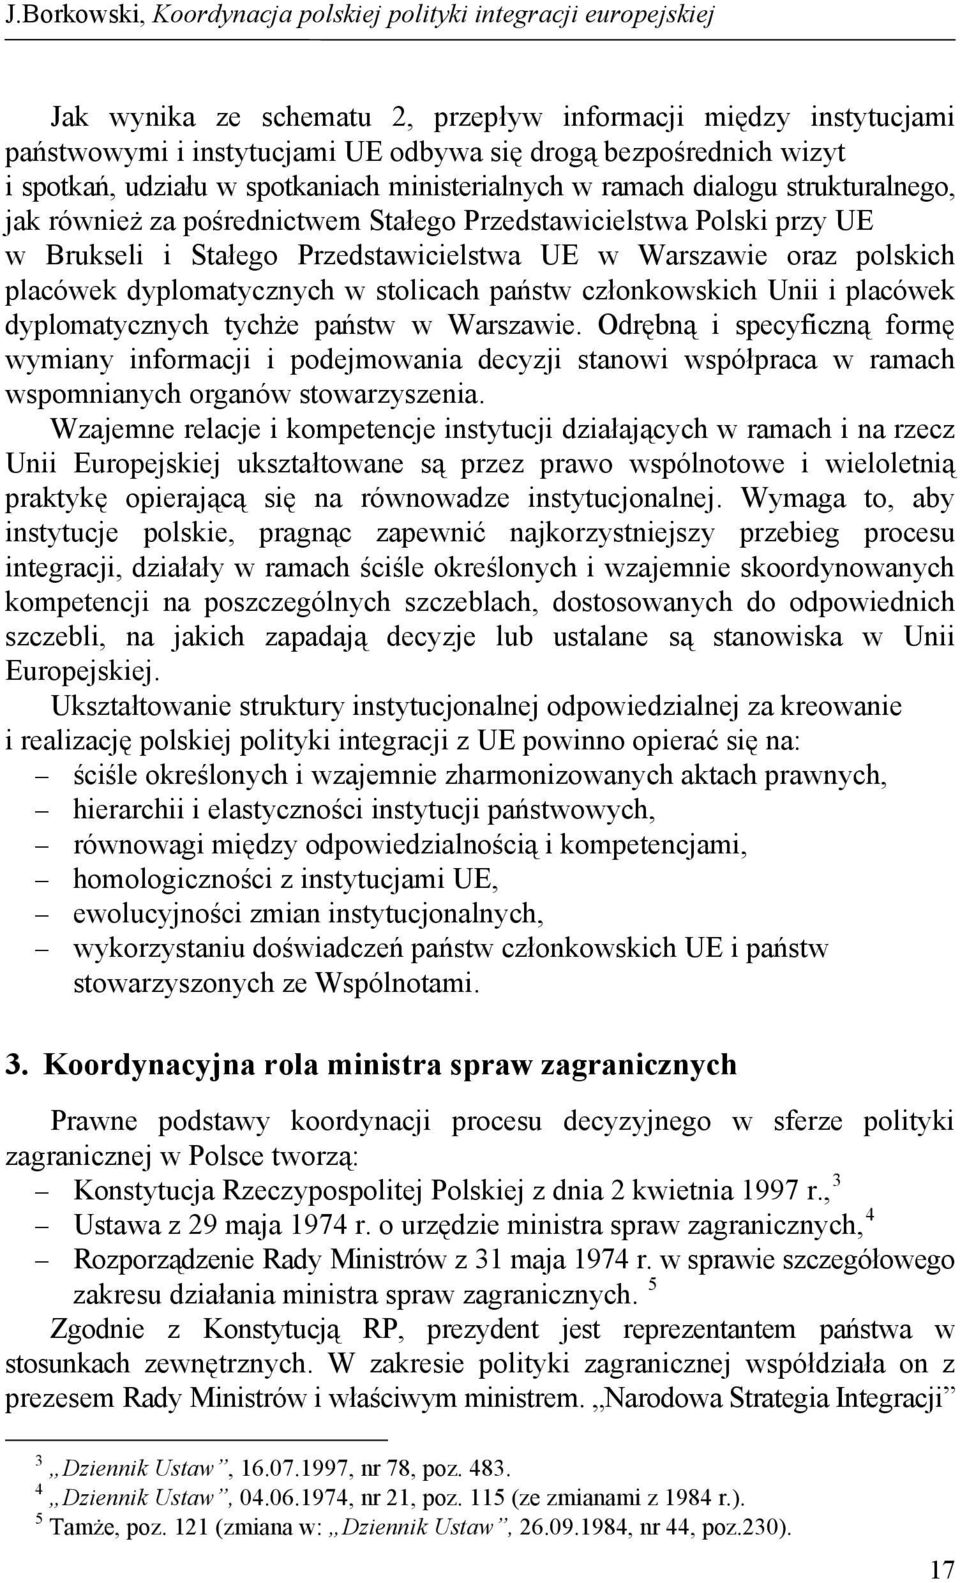 członkowskich Unii i placówek dyplomatycznych tychże państw w Warszawie.